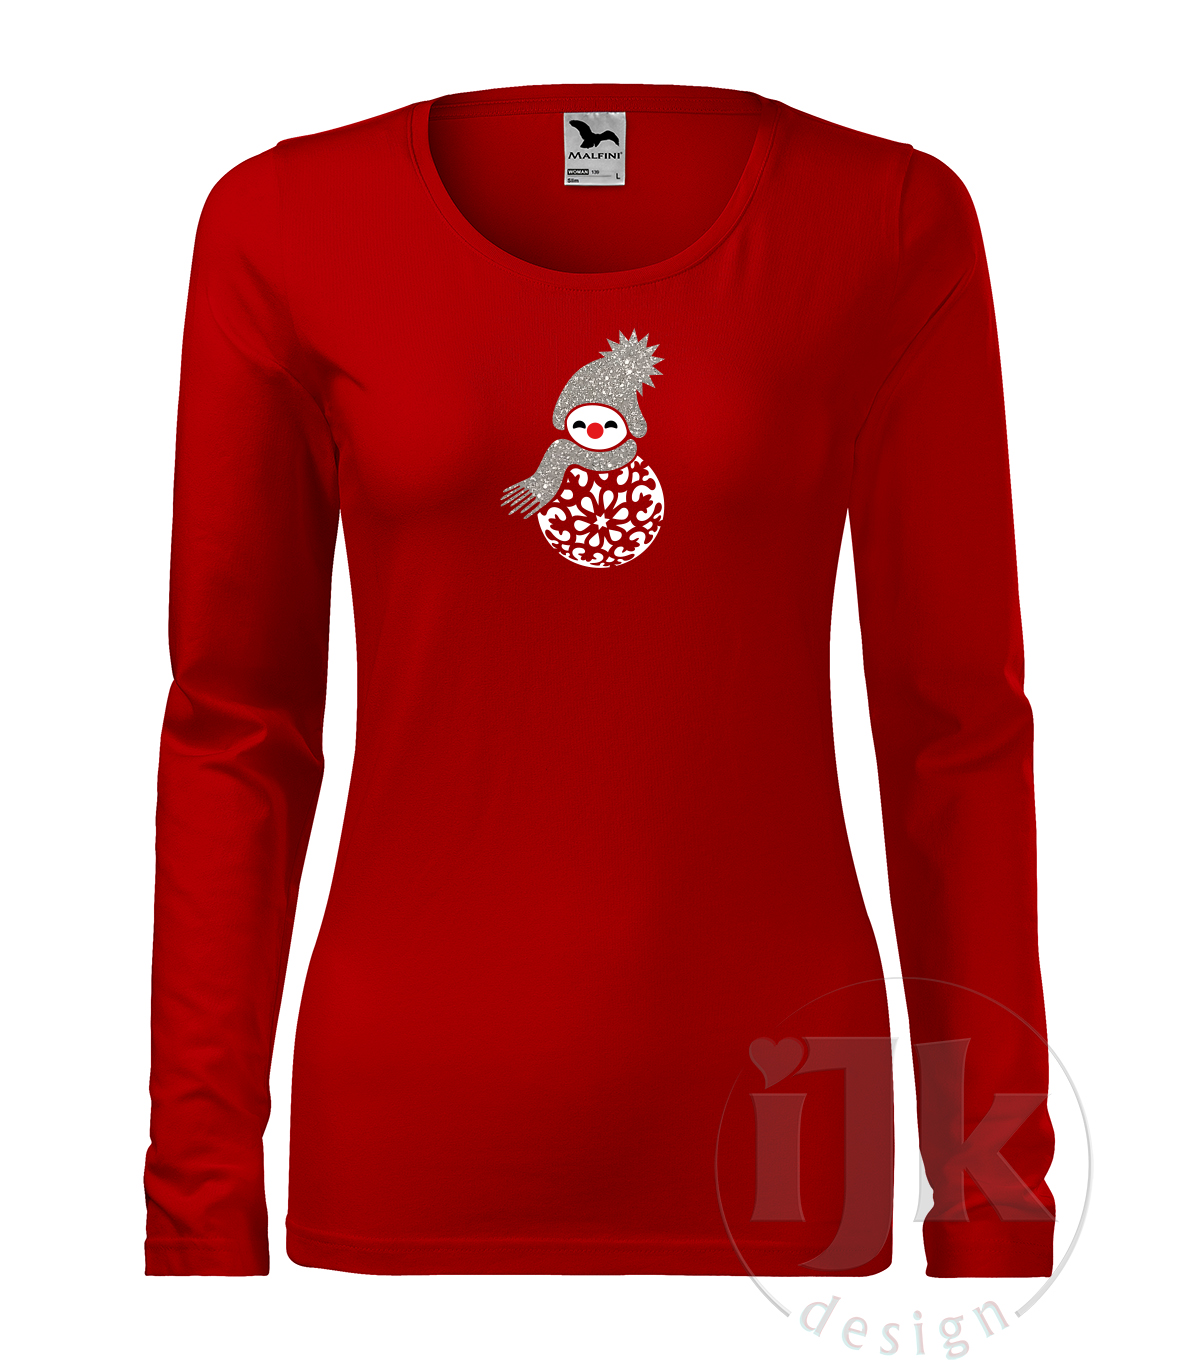 Dámske červené tričko s potlačou, so striebornou glitrovou a bielou hladkou fóliou, s autorským zimným vzorom, motívom je snehuliak v netradičnom prevedení, časť jeho tela tvorí vianočná guľa a s dlhým rukávom.